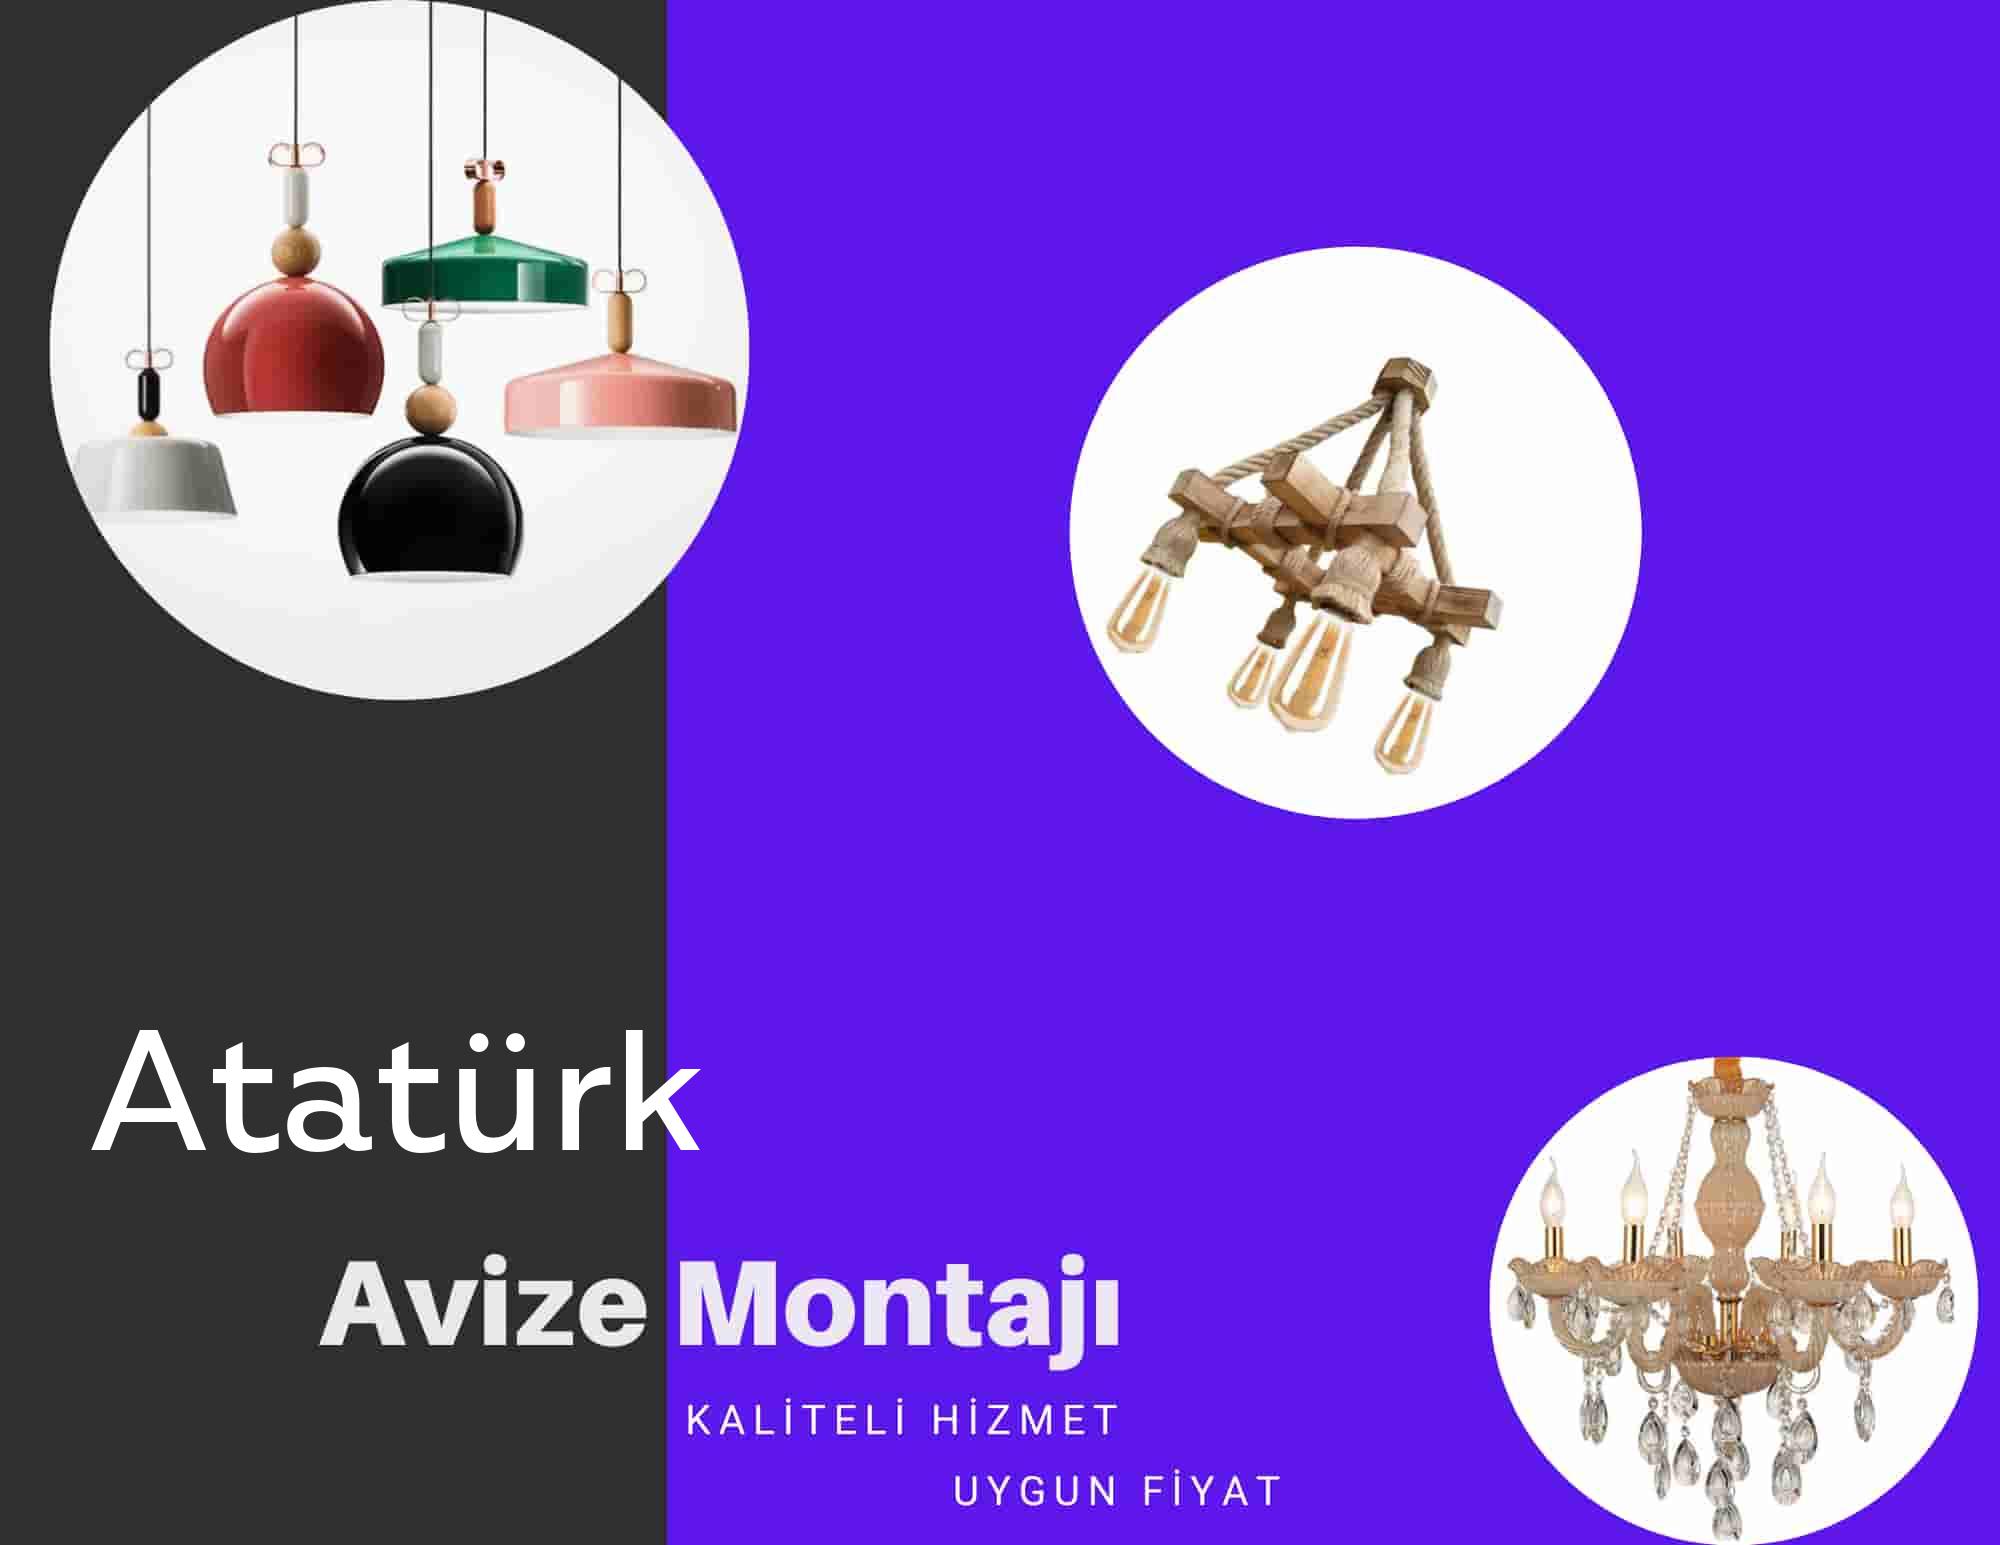 Atatürkde avize montajı yapan yerler arıyorsanız elektrikcicagir anında size profesyonel avize montajı ustasını yönlendirir.